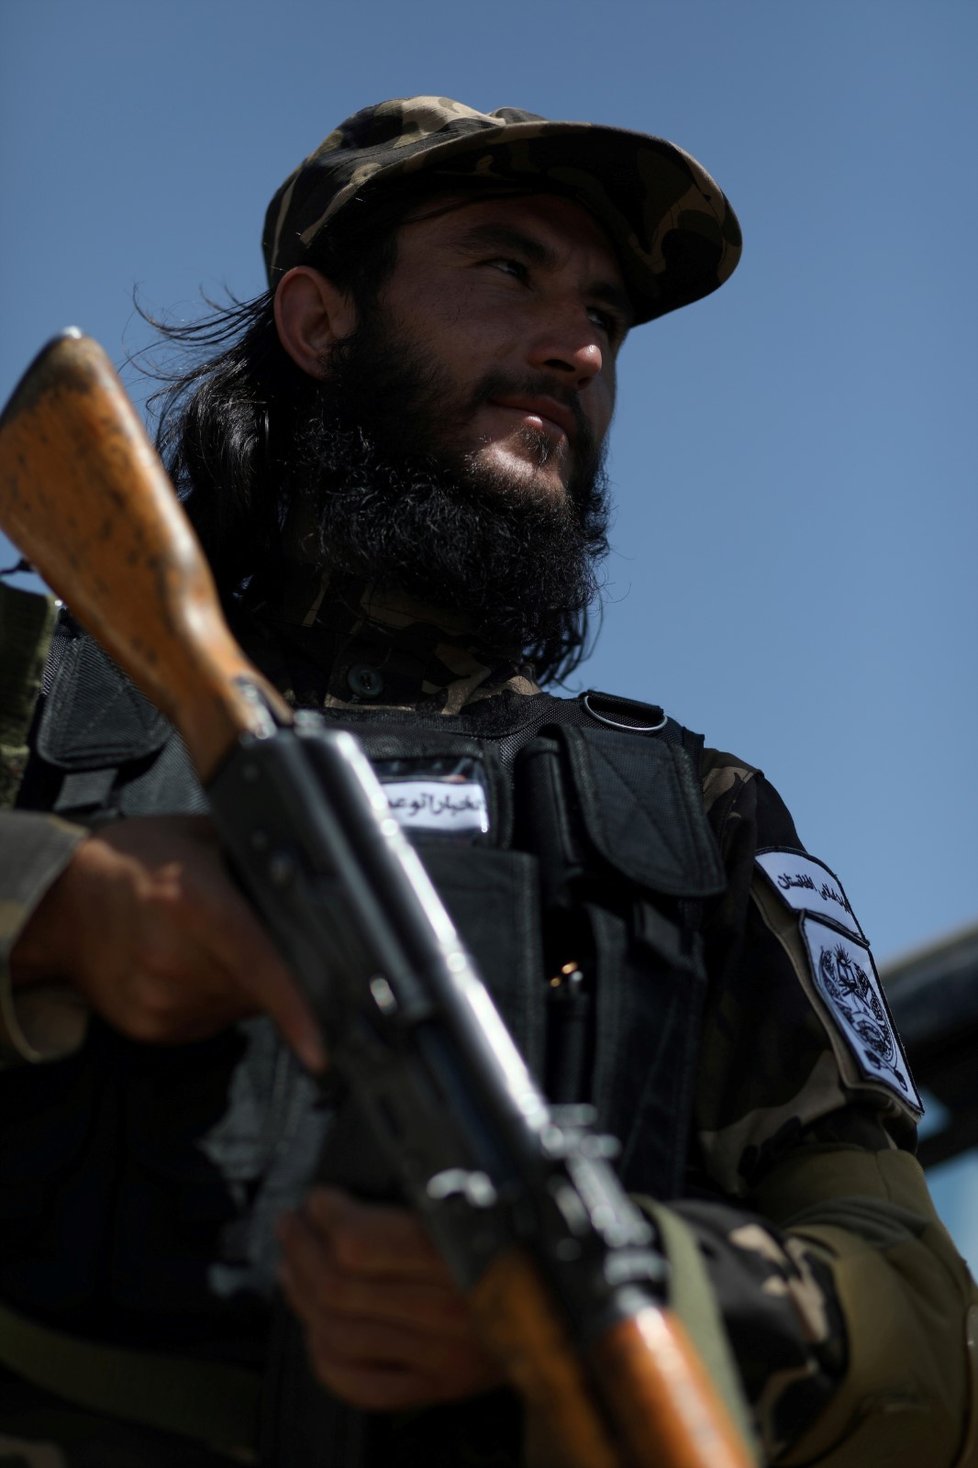 Speciální jednotky Tálibánu v Kábulu